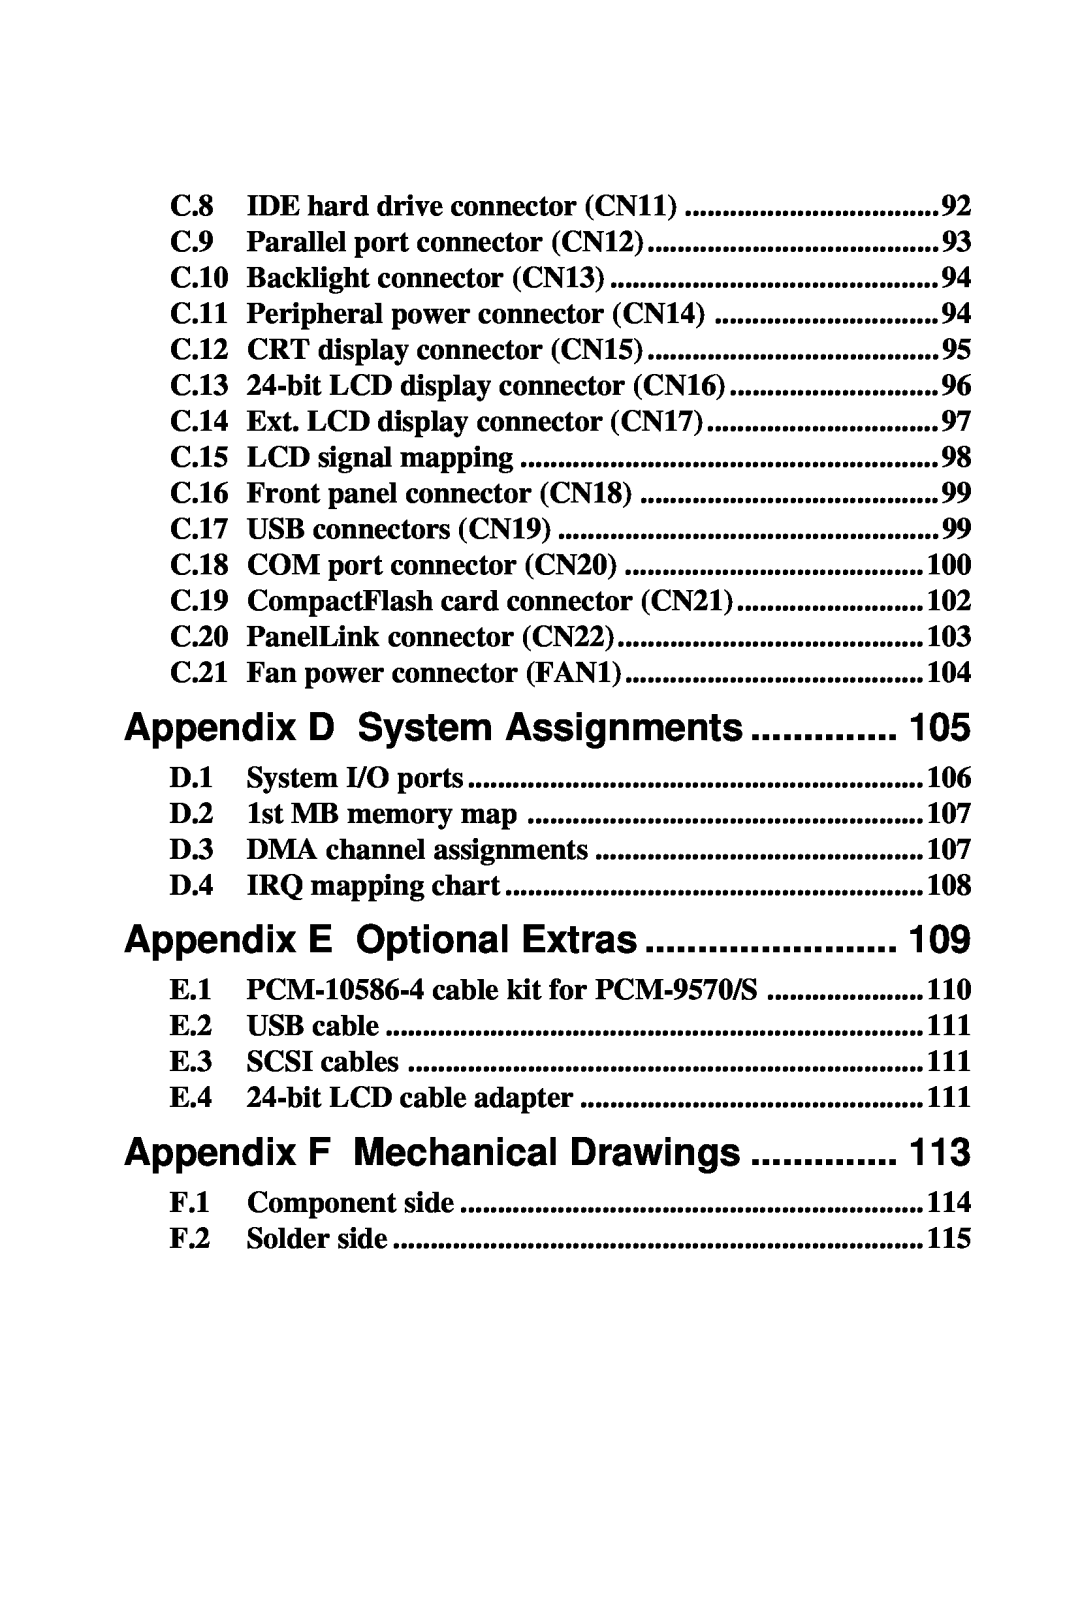 Advantech 2006957006 5th Edition Appendix D System Assignments, Appendix E Optional Extras, Appendix F Mechanical Drawings 